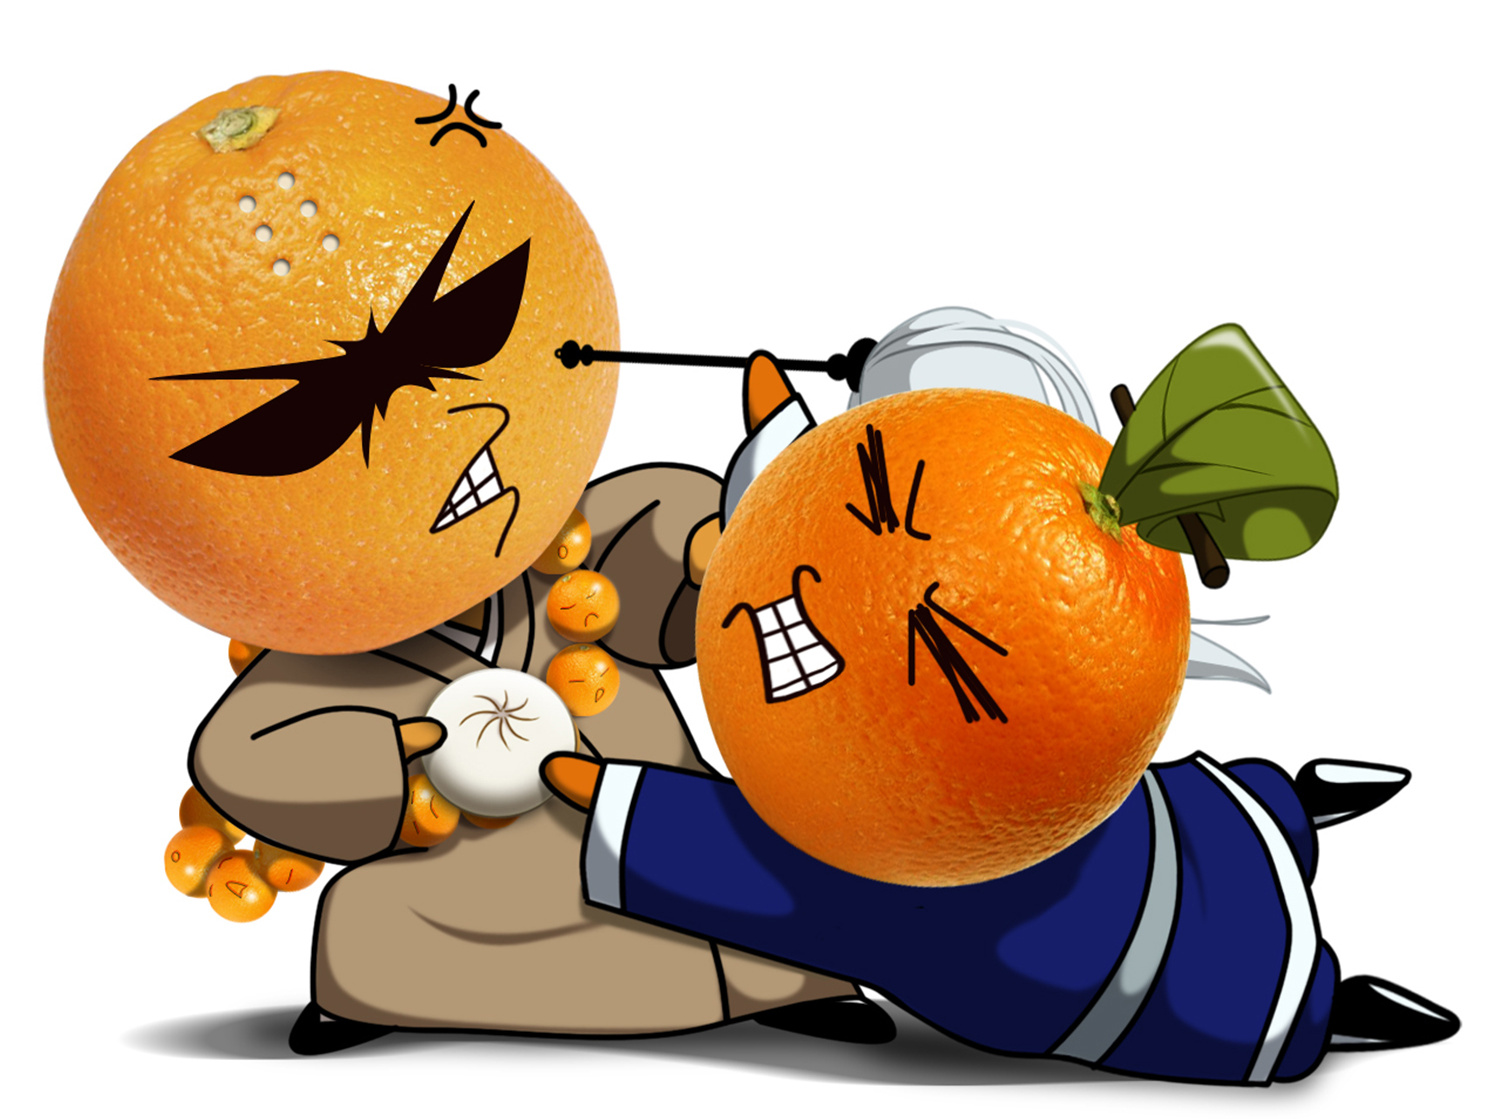 脐橙坏果图片,橙子烂果图片 - 伤感说说吧